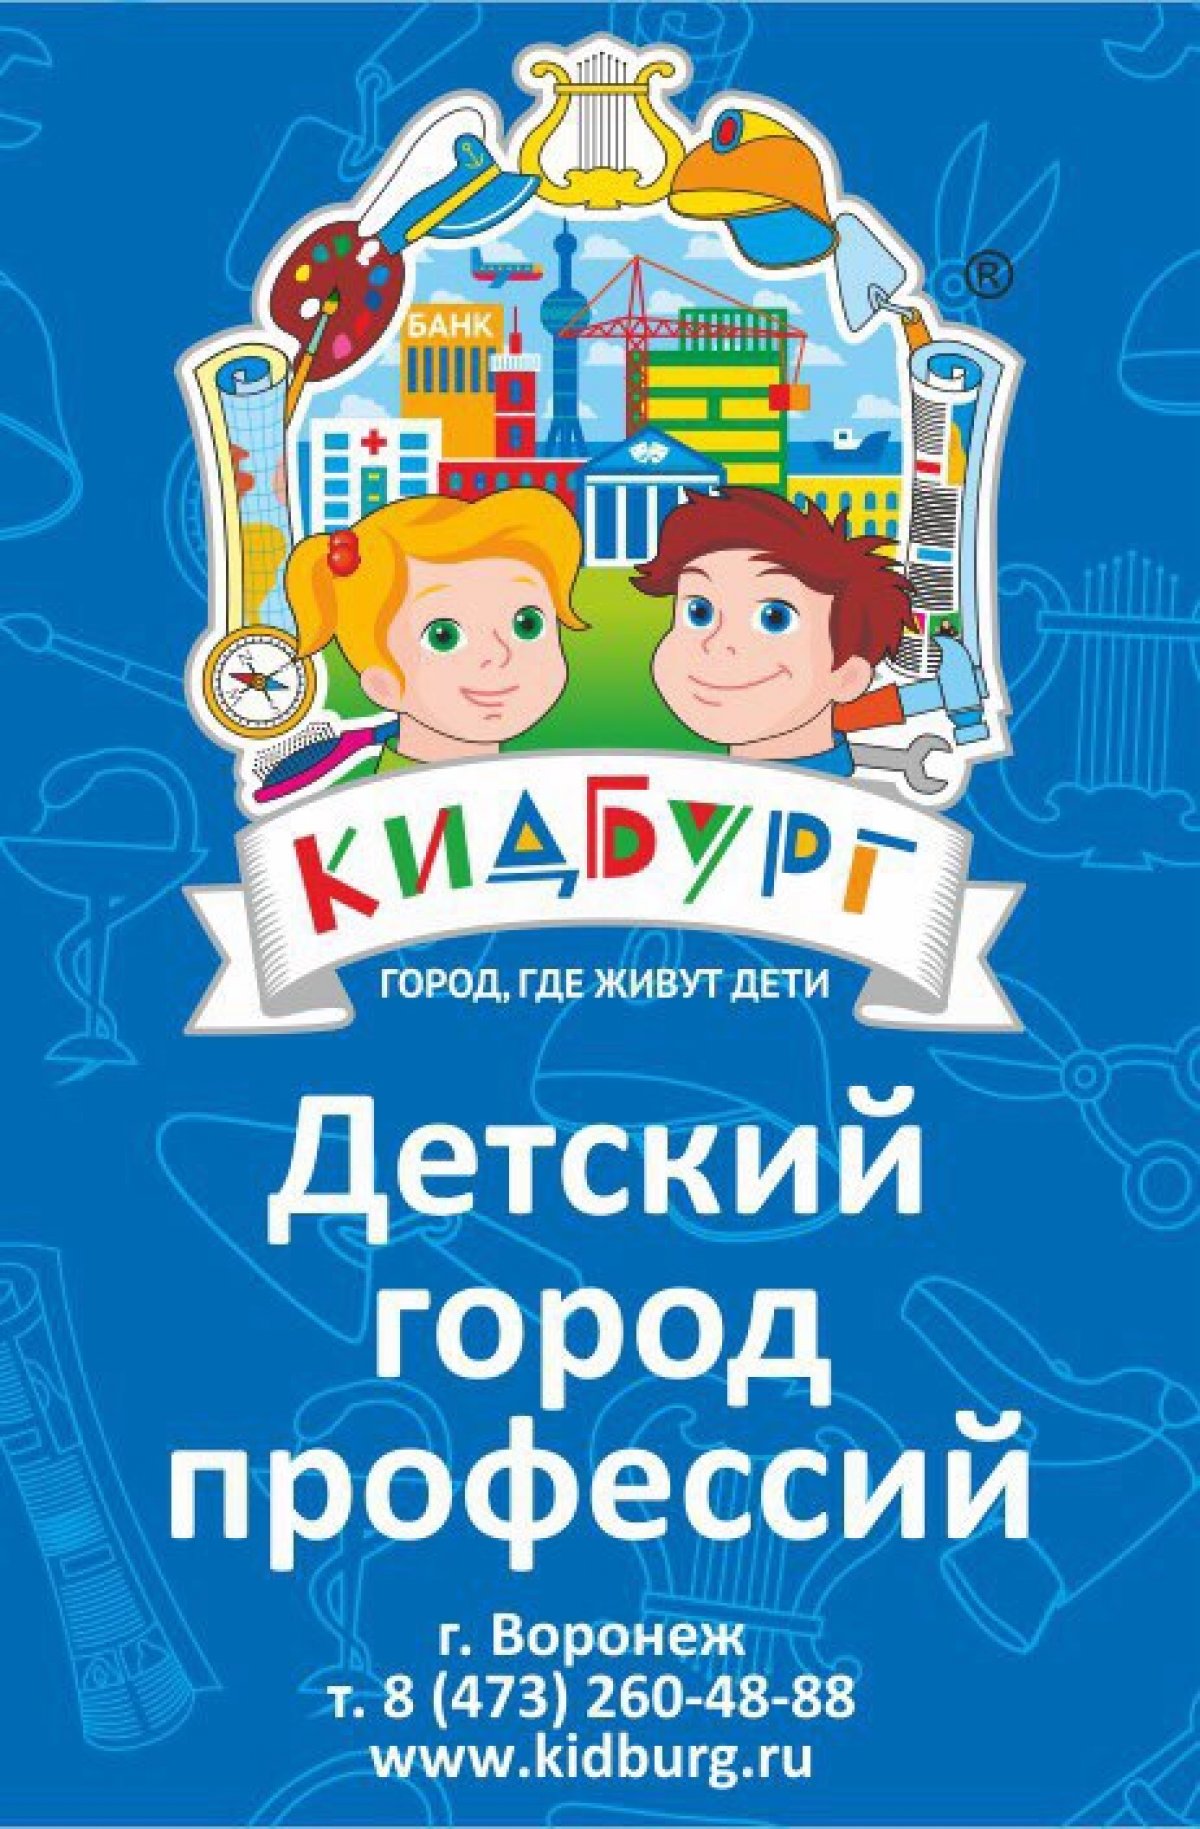 Детский город профессий КИДБУРГ (в Сити-парке "Град"), приглашает на работу: